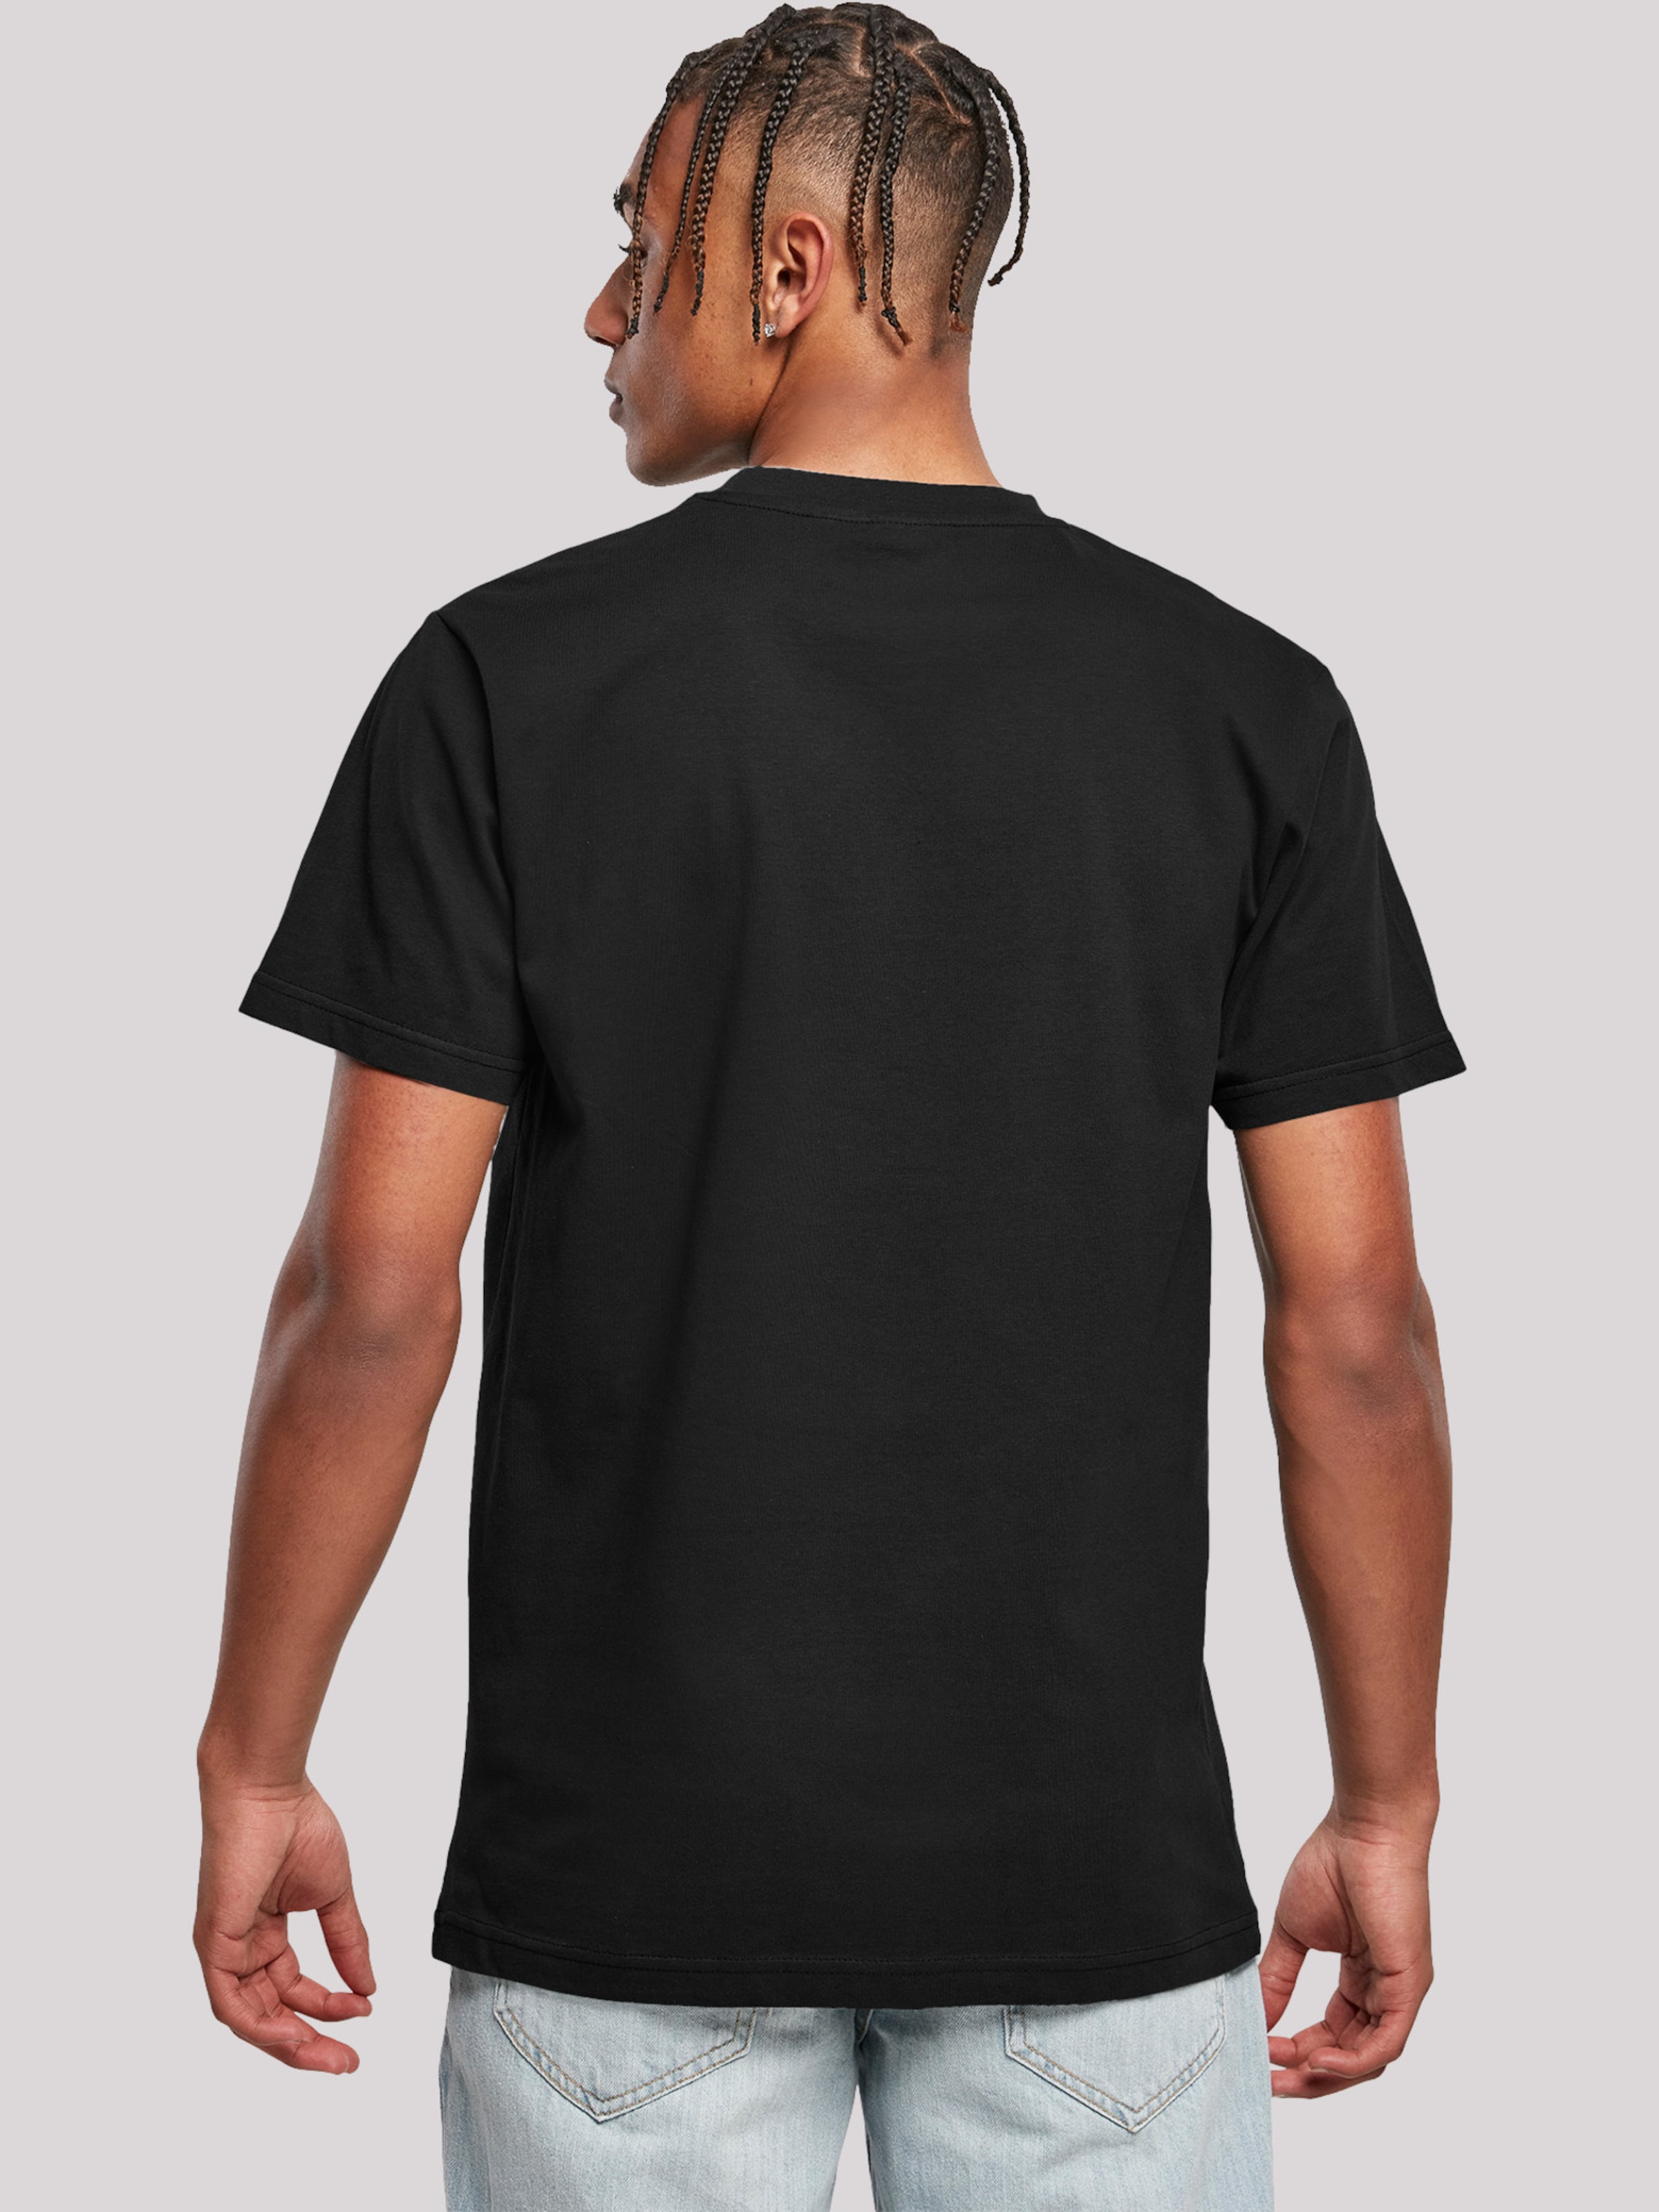 Männer Große Größen F4NT4STIC Shirt in Schwarz - LN99394